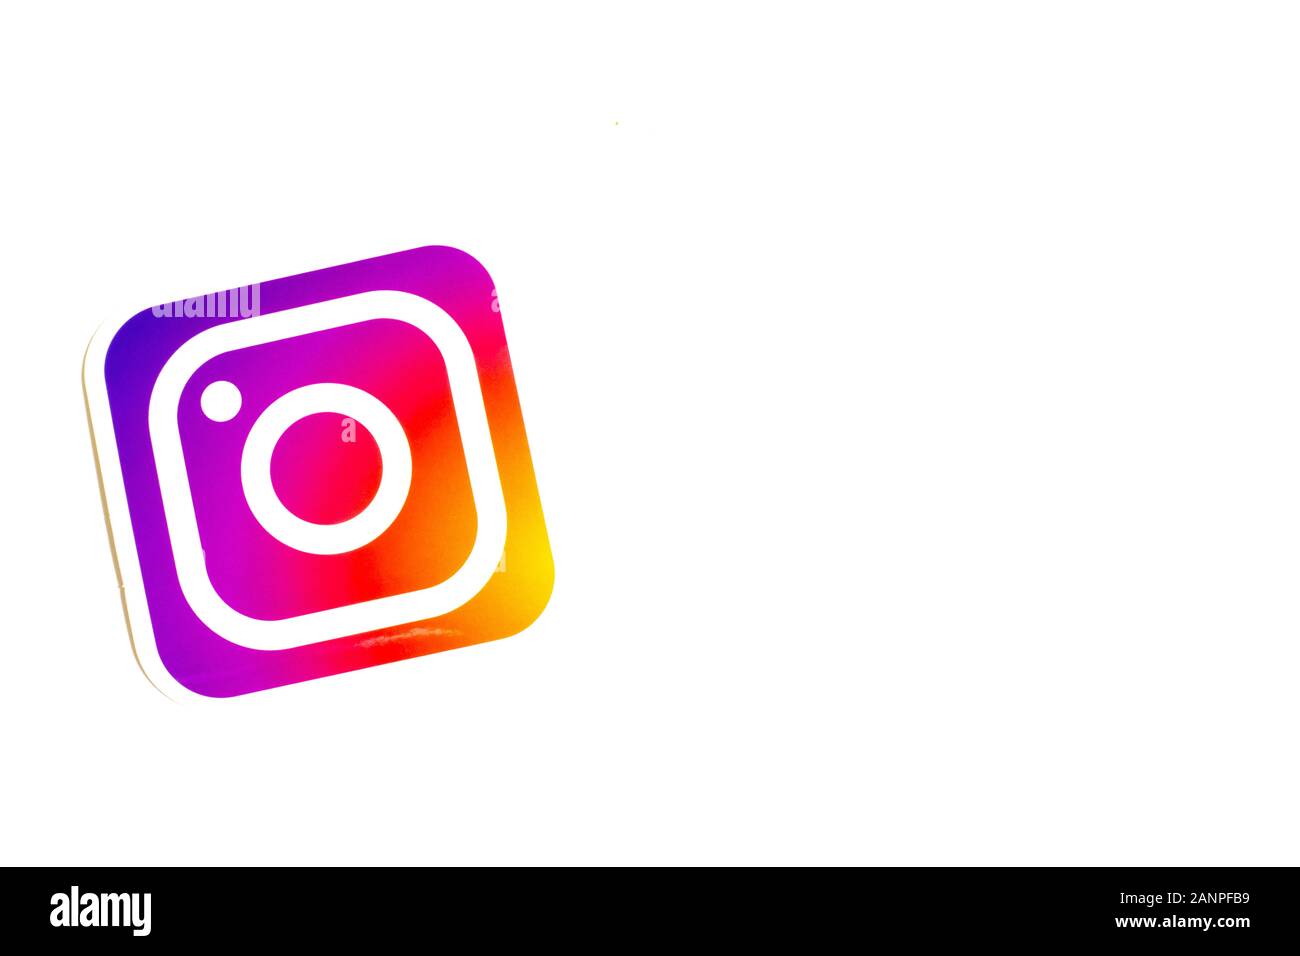 Los Angeles, Californie, États-Unis - 17 janvier 2020: Logo Instagram sur fond blanc avec espace de copie. Icône des médias sociaux, éditorial illustratif Banque D'Images